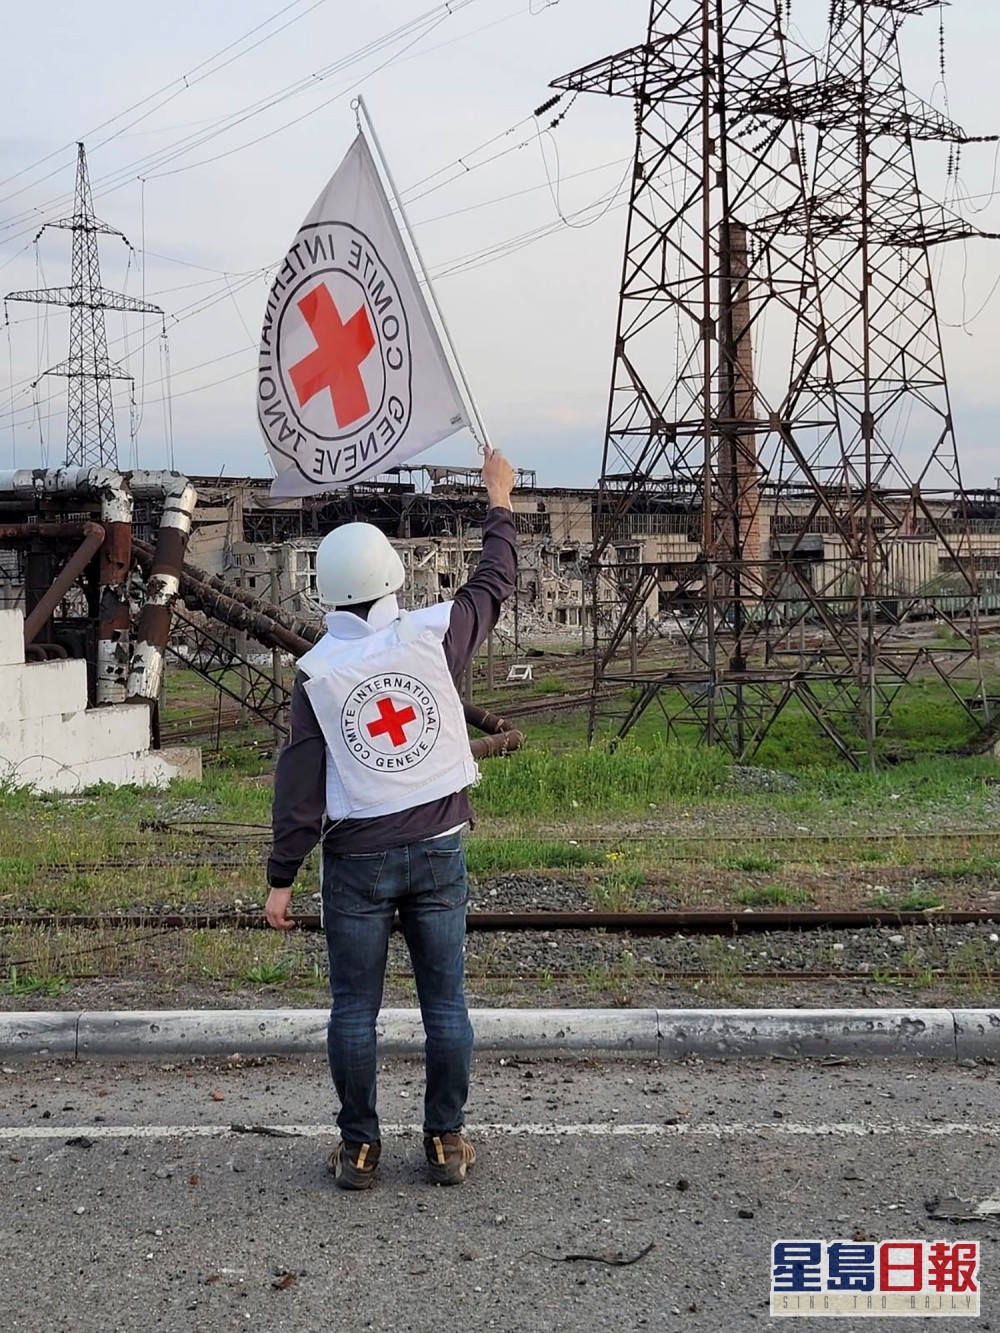 紅十字會指正參與疏散平民的行動。AP